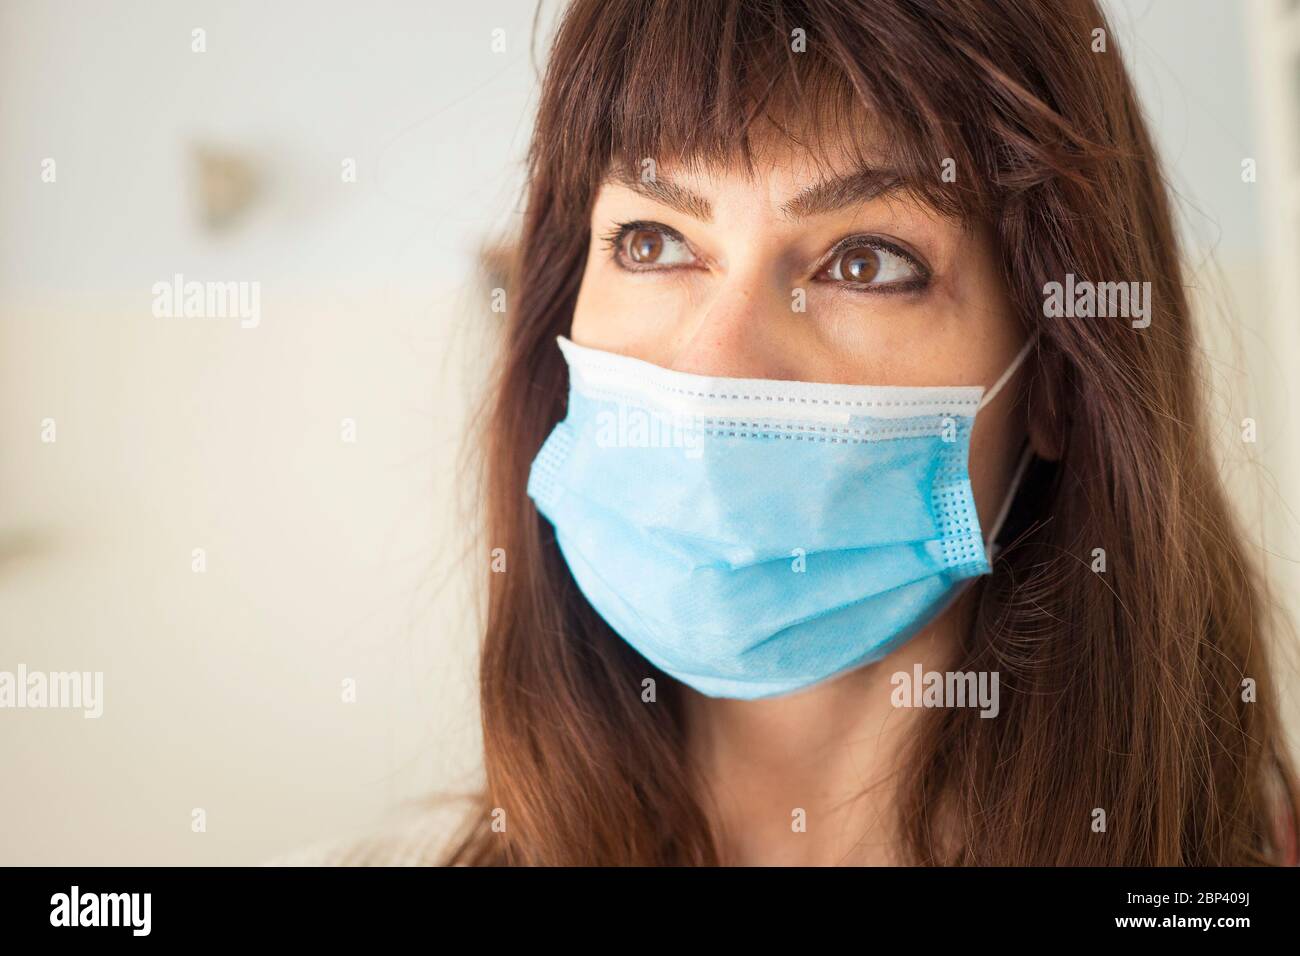 Femme caucasienne attirante avec de longs cheveux et des langes, portant un masque chirurgical bleu pendant une pandémie de covid-19 ou de coronavirus. Banque D'Images